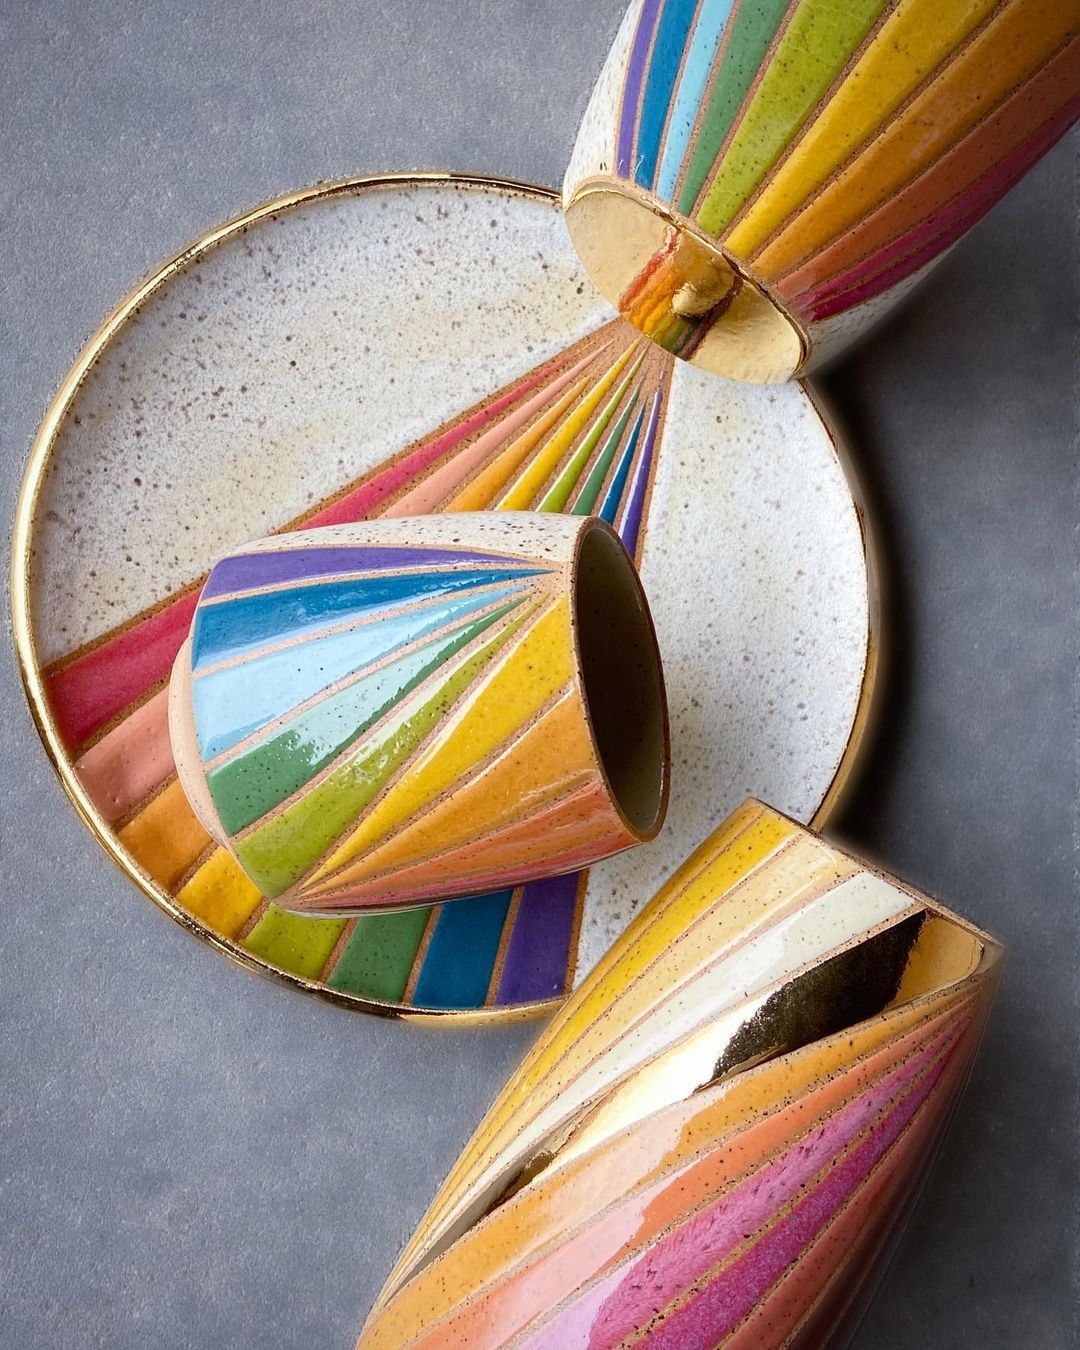 Rainbow Ceramics Gorgeous Multicolored Ceramic Pieces By Christine Tenenholtz (9)